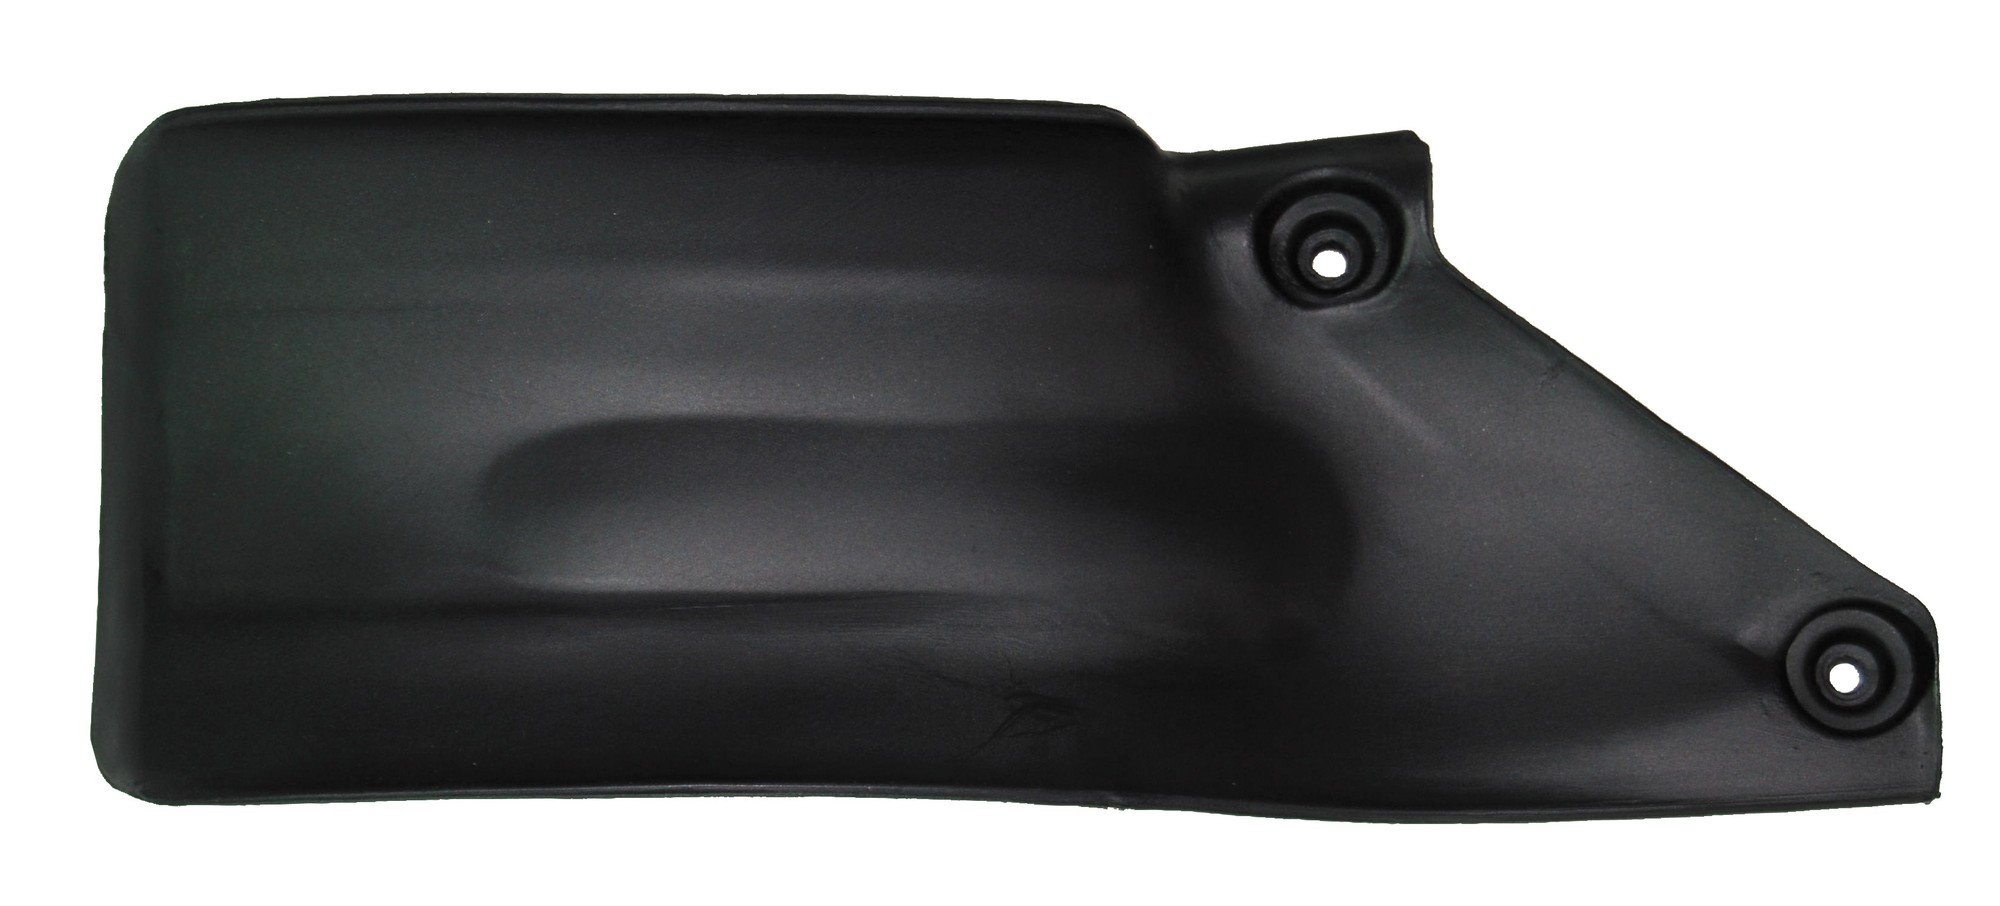 Obrázek produktu kryt zadního tlumiče KTM/Husaberg, RTECH (černý)